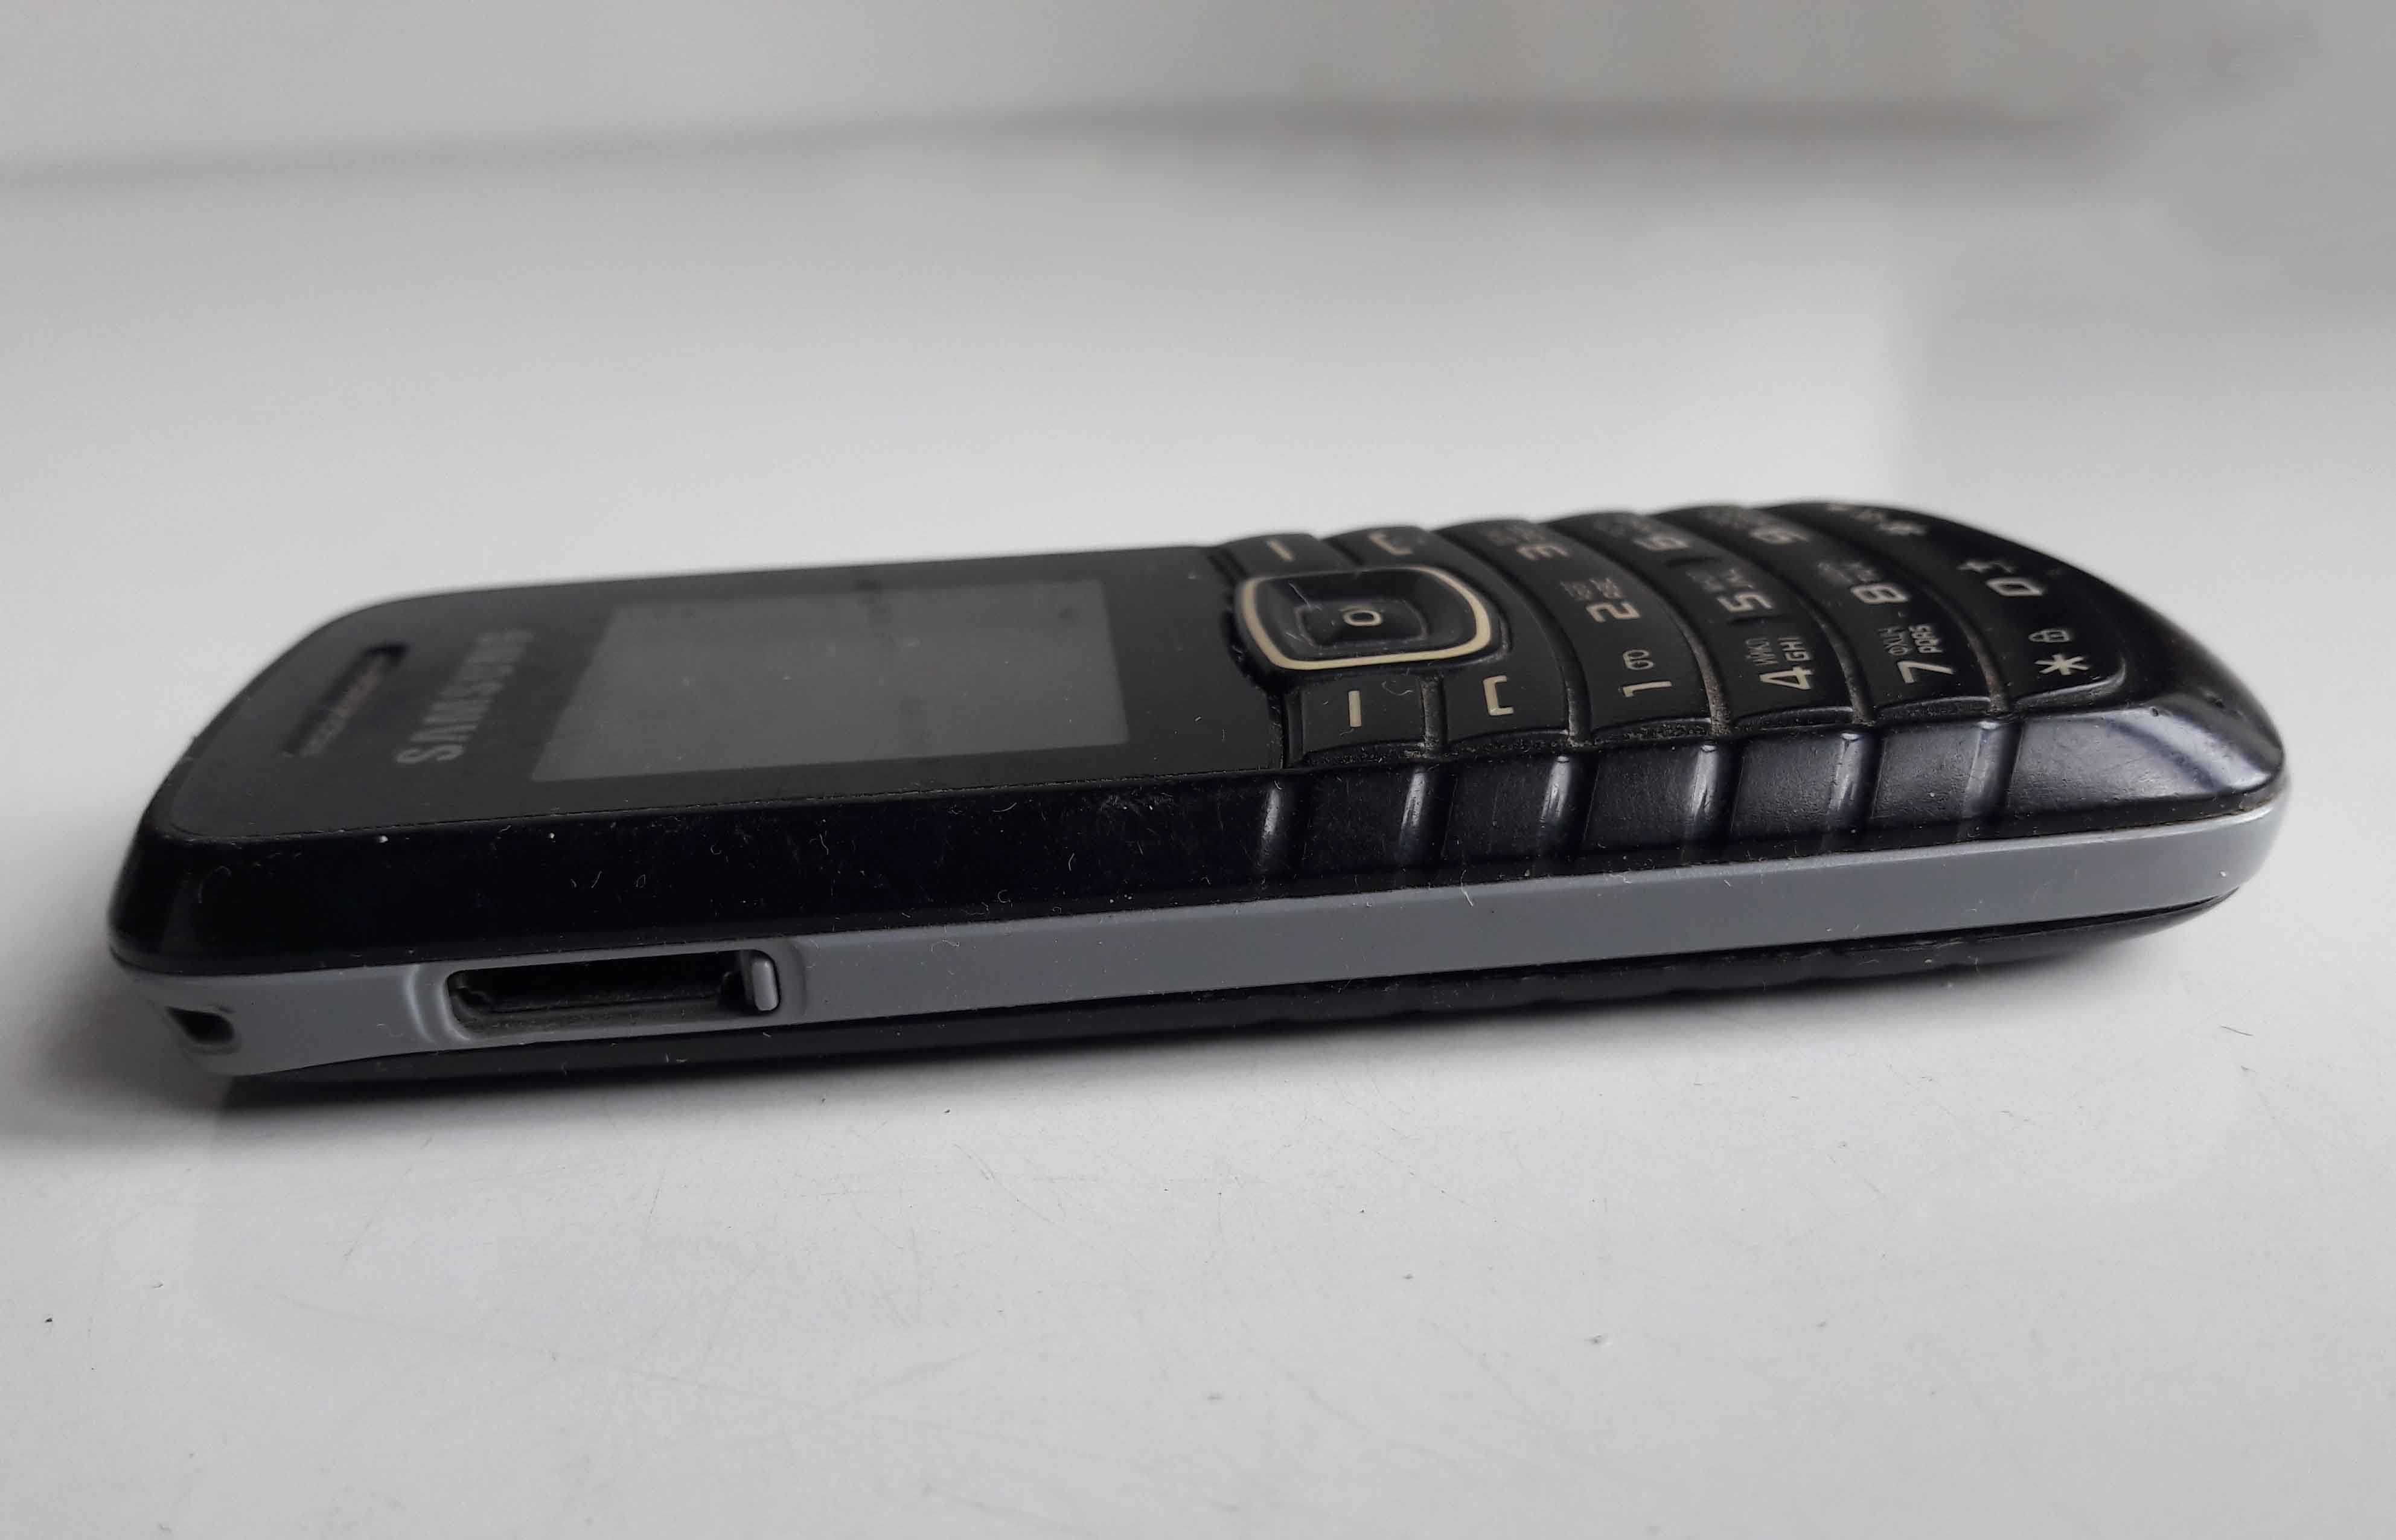 Мобильный телефон Samsung GT-E1080W